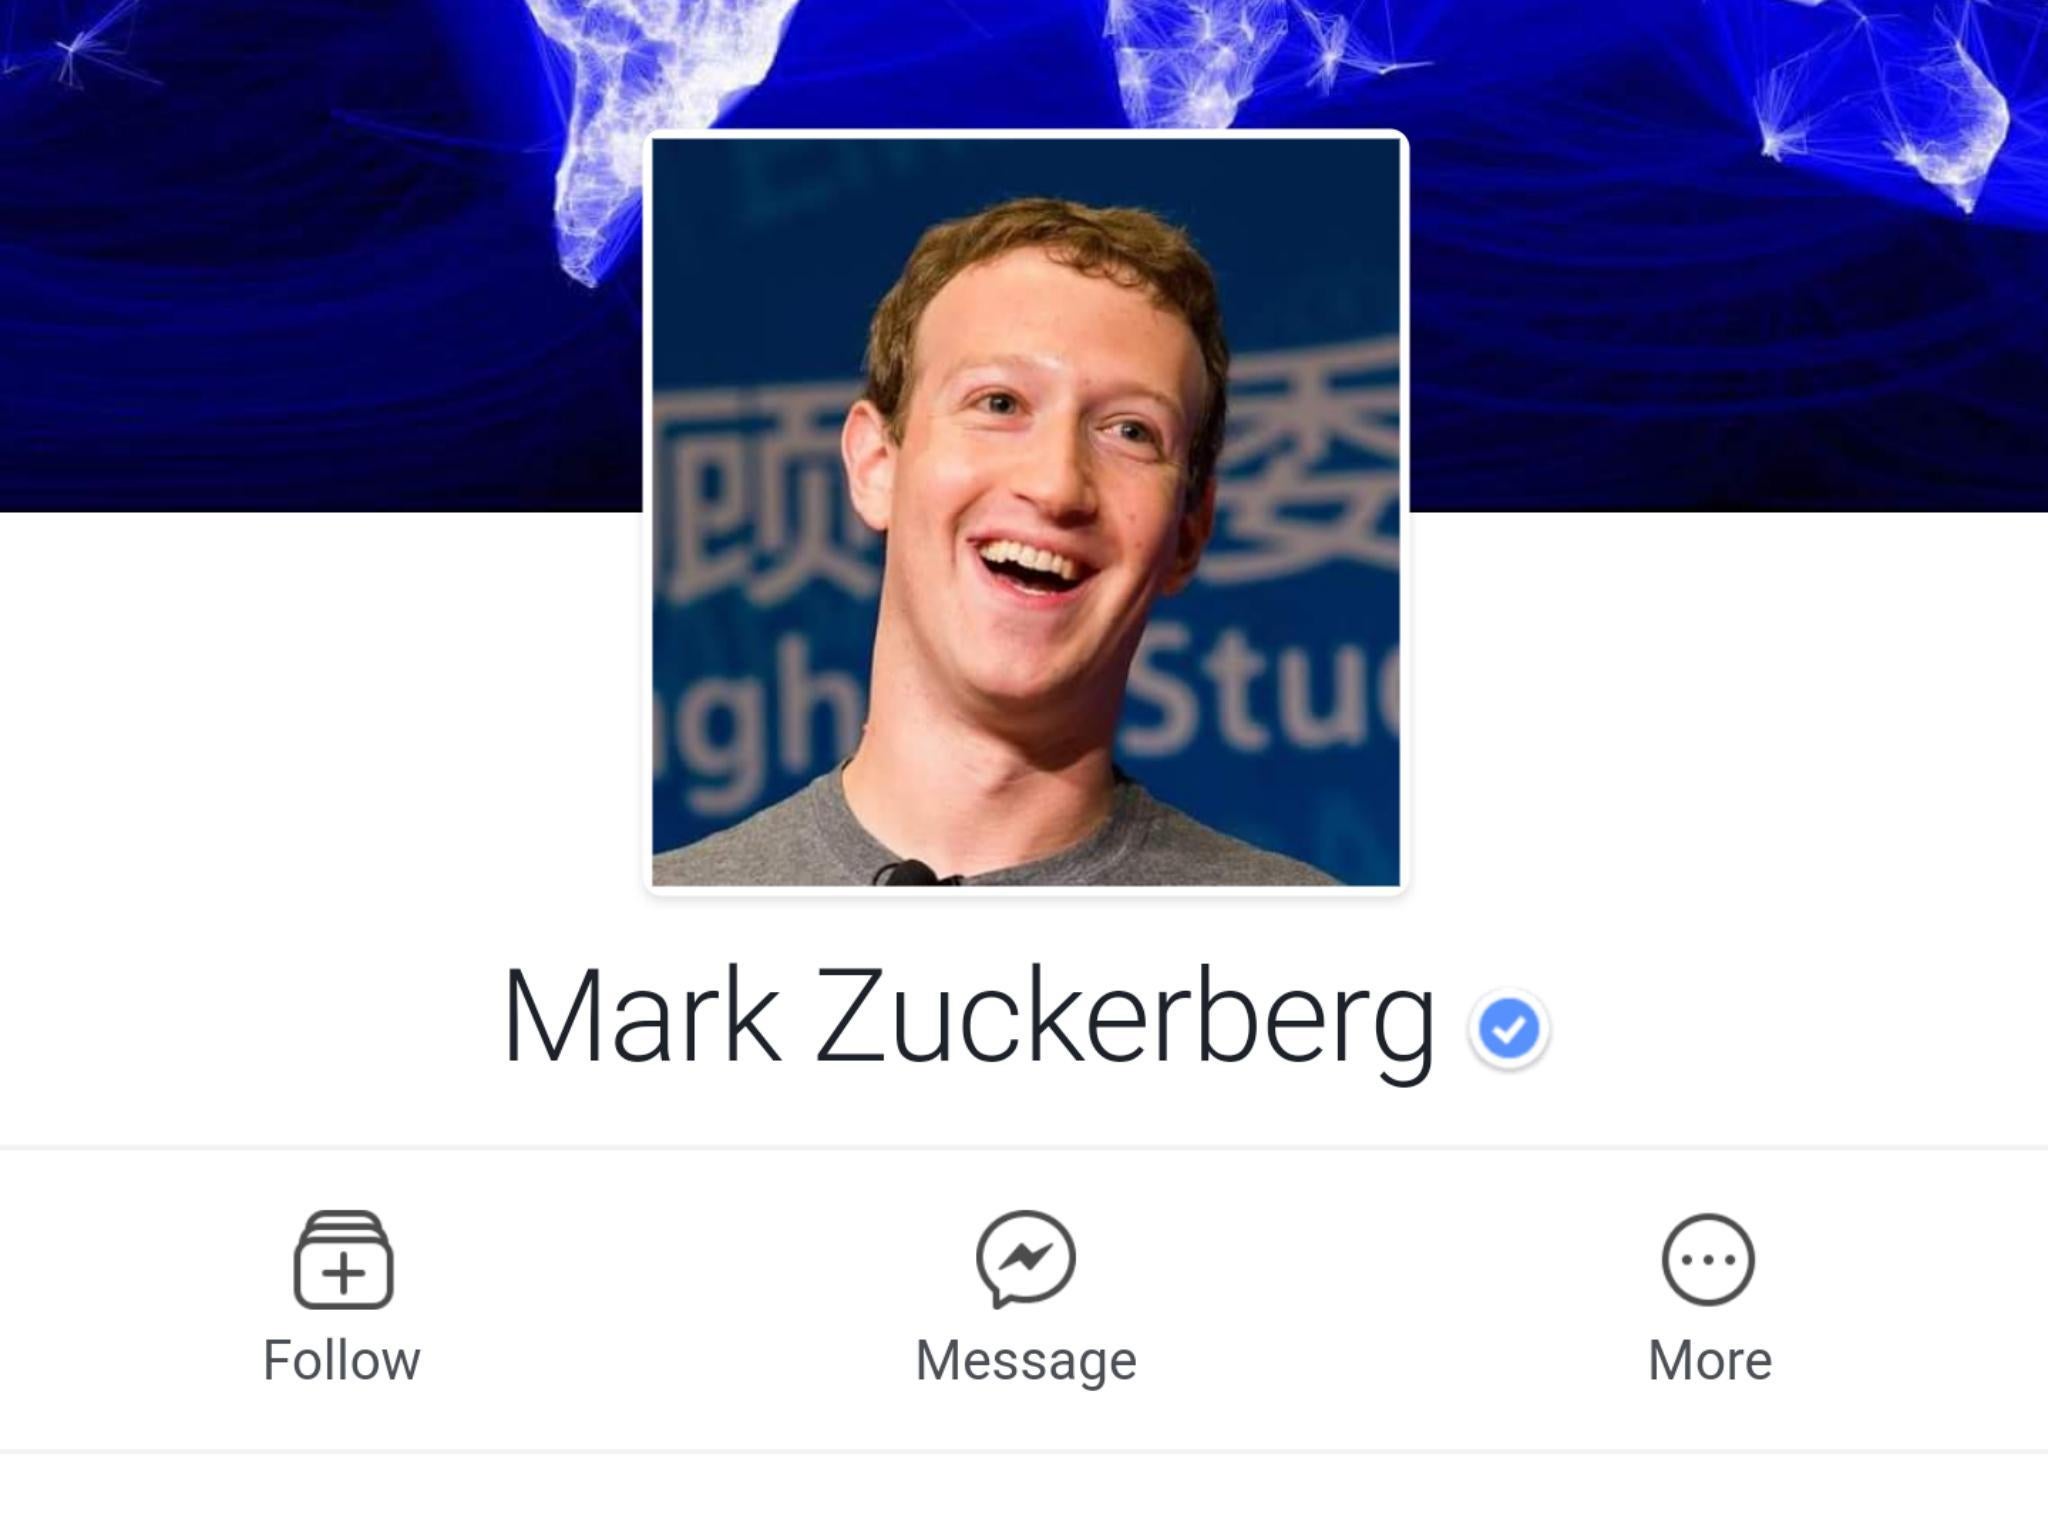 'If you’re friends, blocking Mark Zuckerberg will also unfriend him'